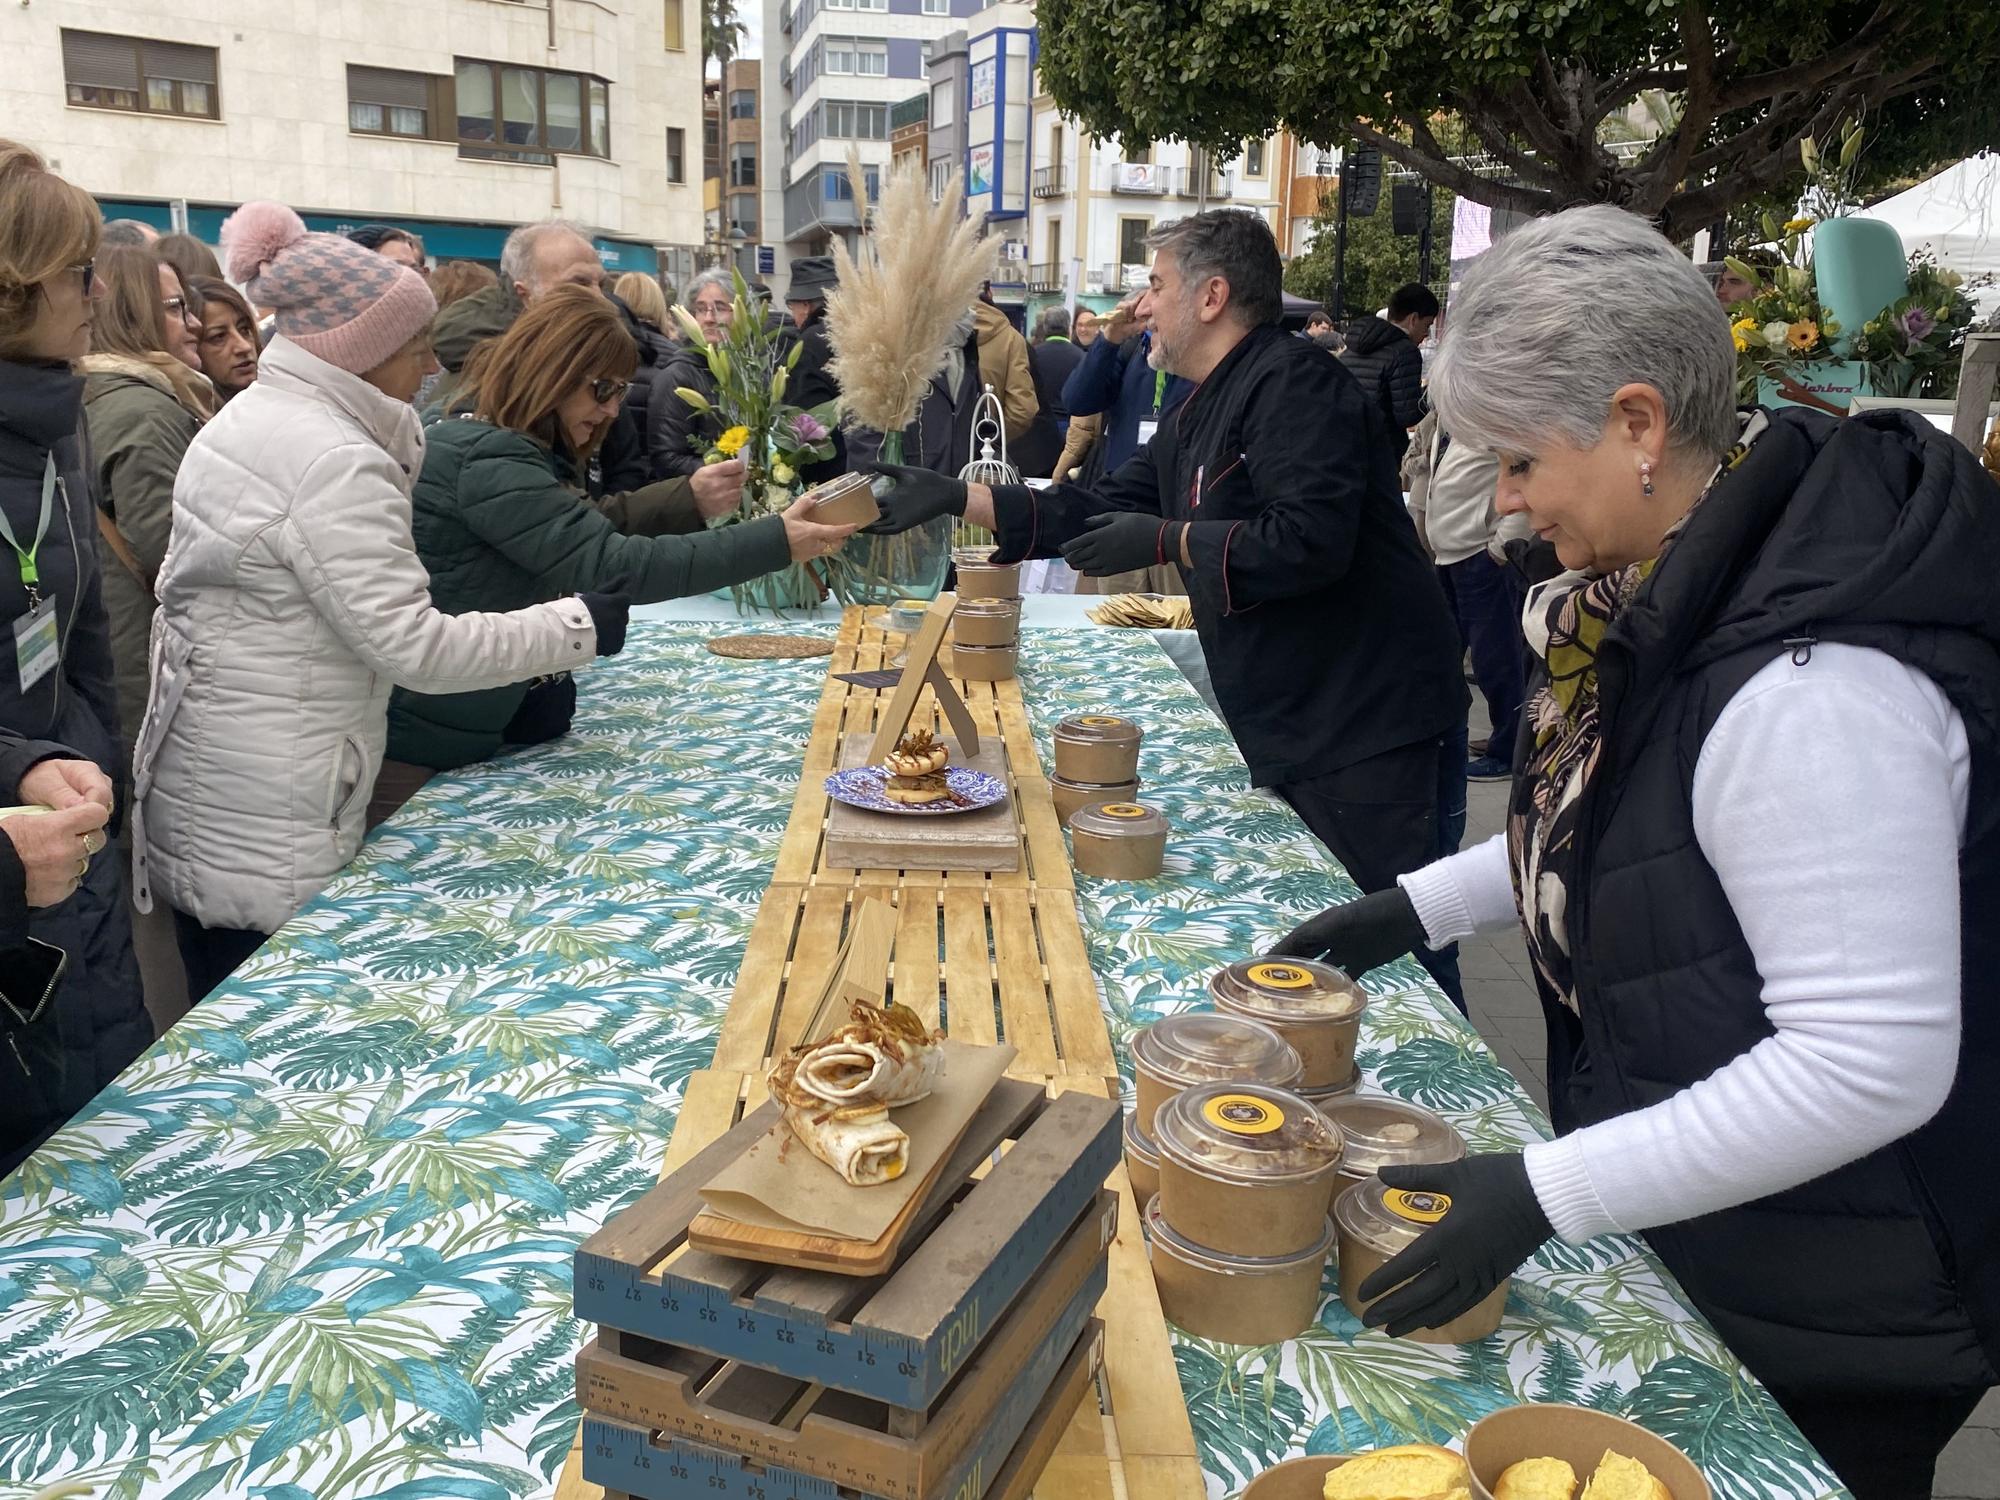 La 'carxofa' vuelve a llenar el centro de Benicarló con la degustación gastronómica